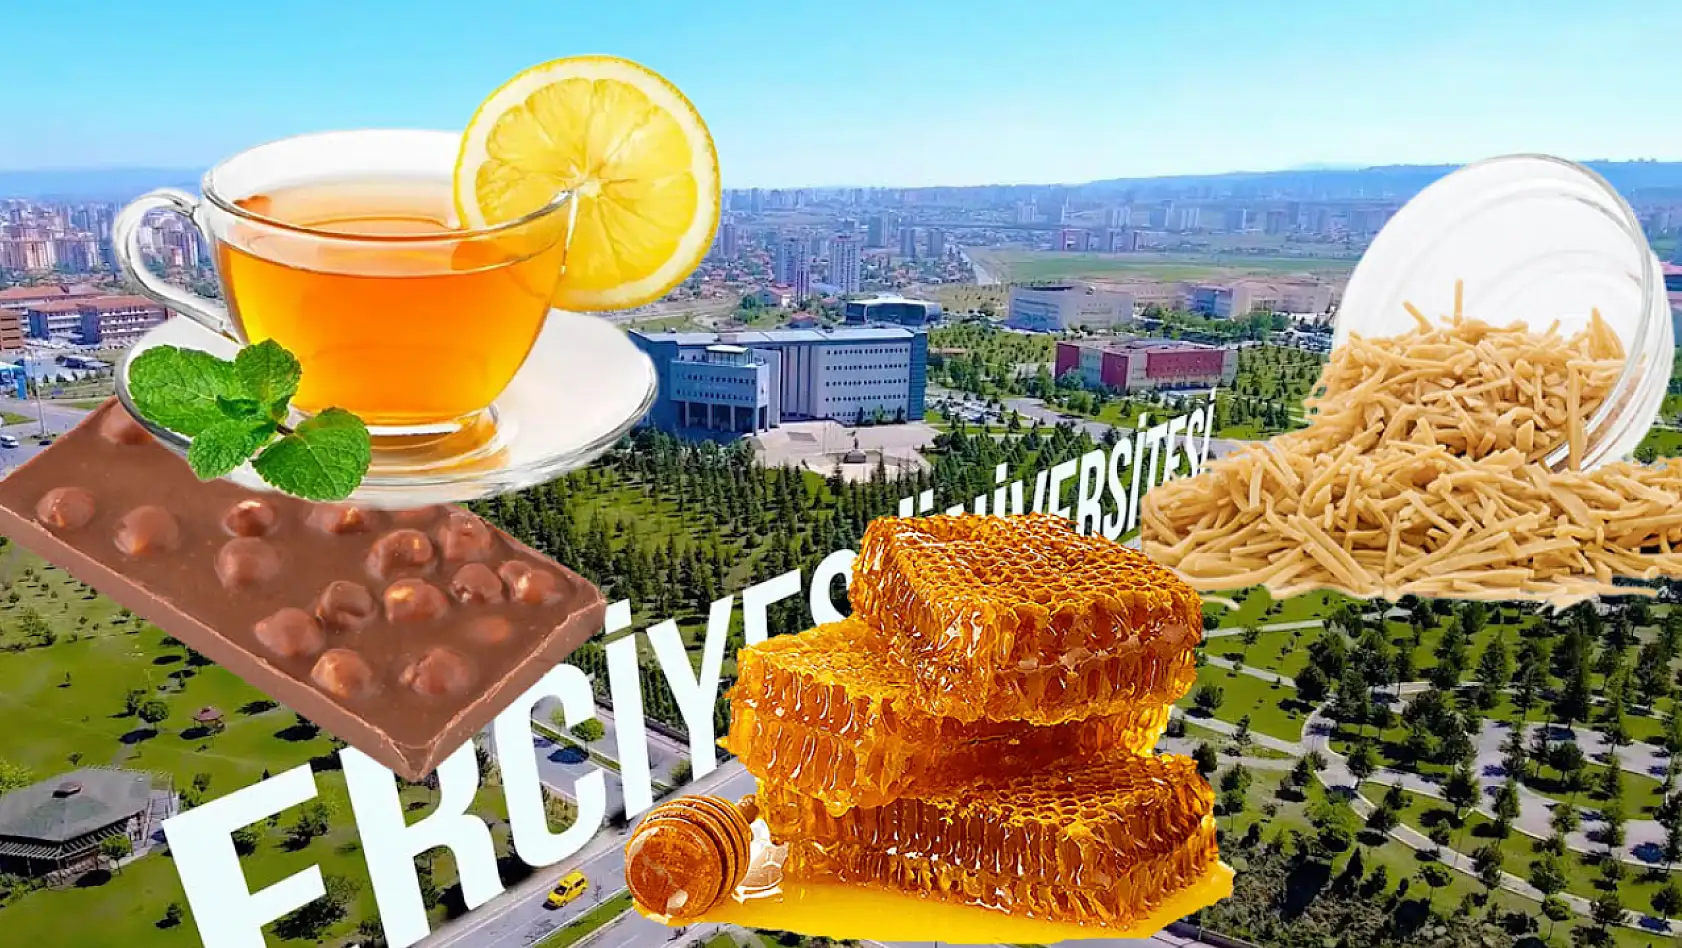 Erciyes Üniversitesi çikolata, erişte, bal ve kış çayı satacak!